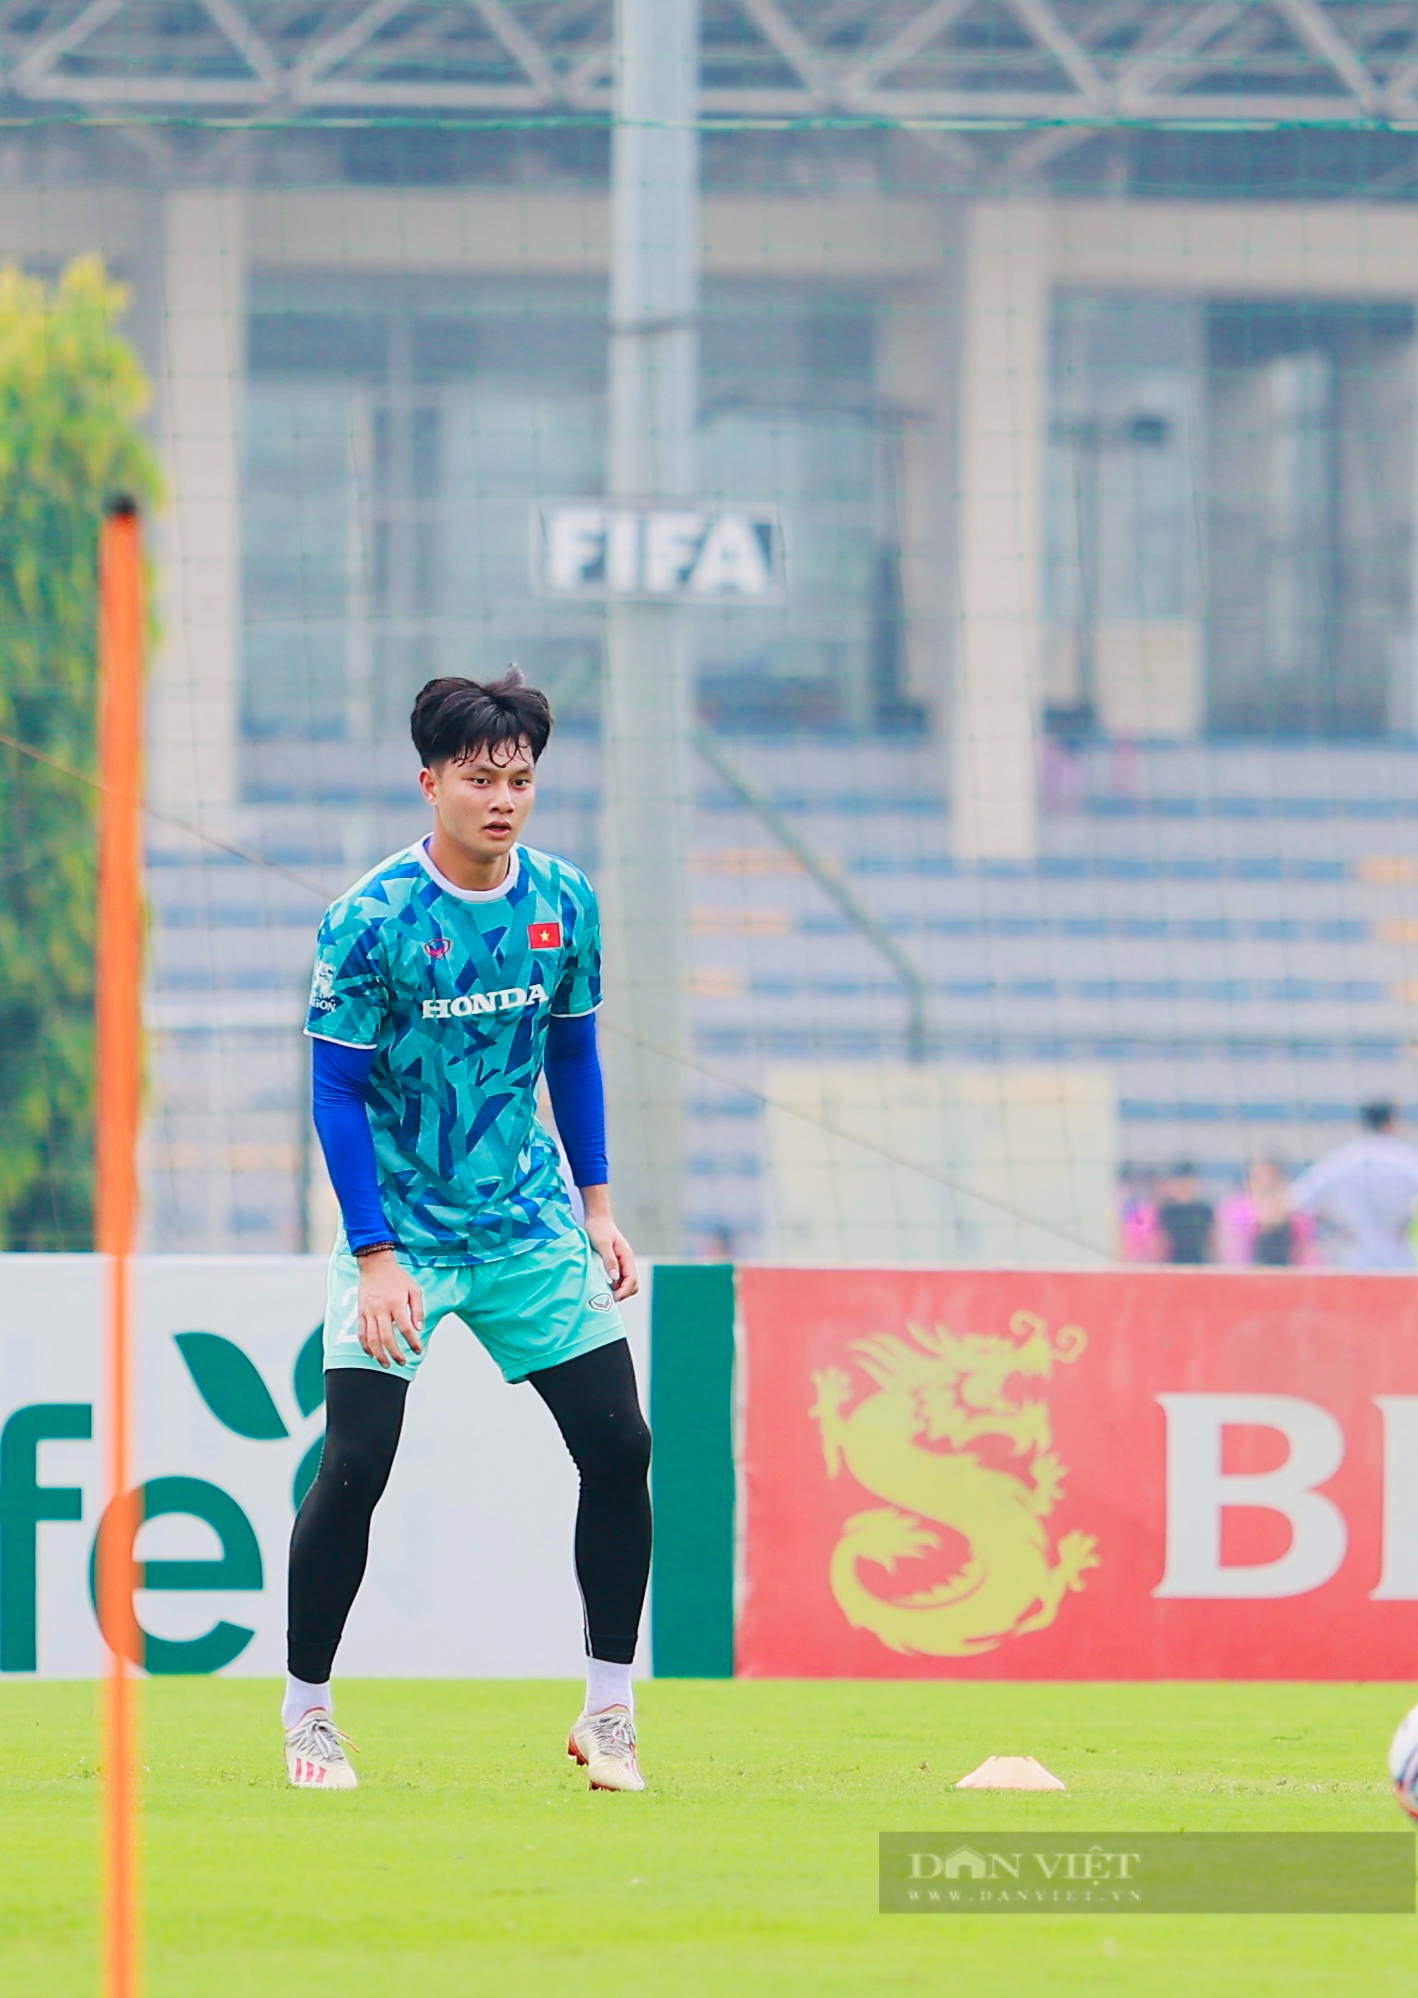 Ngắn nhìn vẻ điển trai của tiền đạo chơi bóng ở Hàn Quốc của U23 Việt Nam - Ảnh 2.